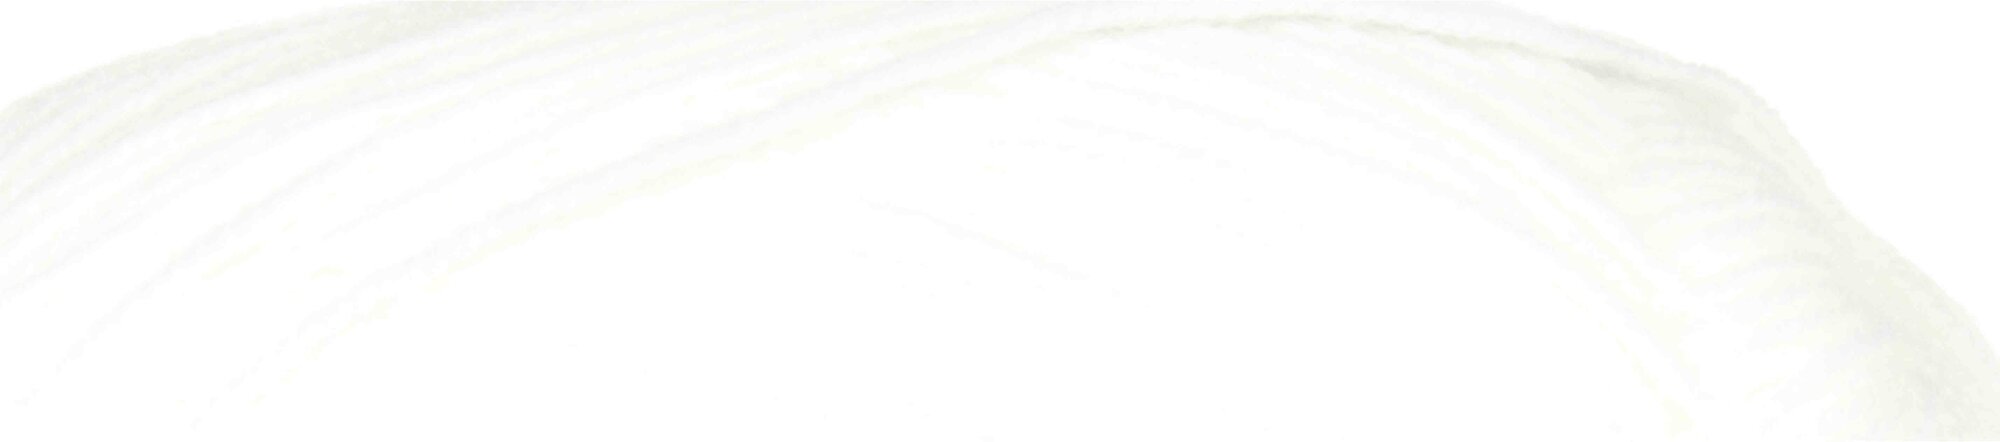 Пряжа Пехорка Детская новинка белый (1), 100%высокообъемный акрил, 200м, 50г, 5шт